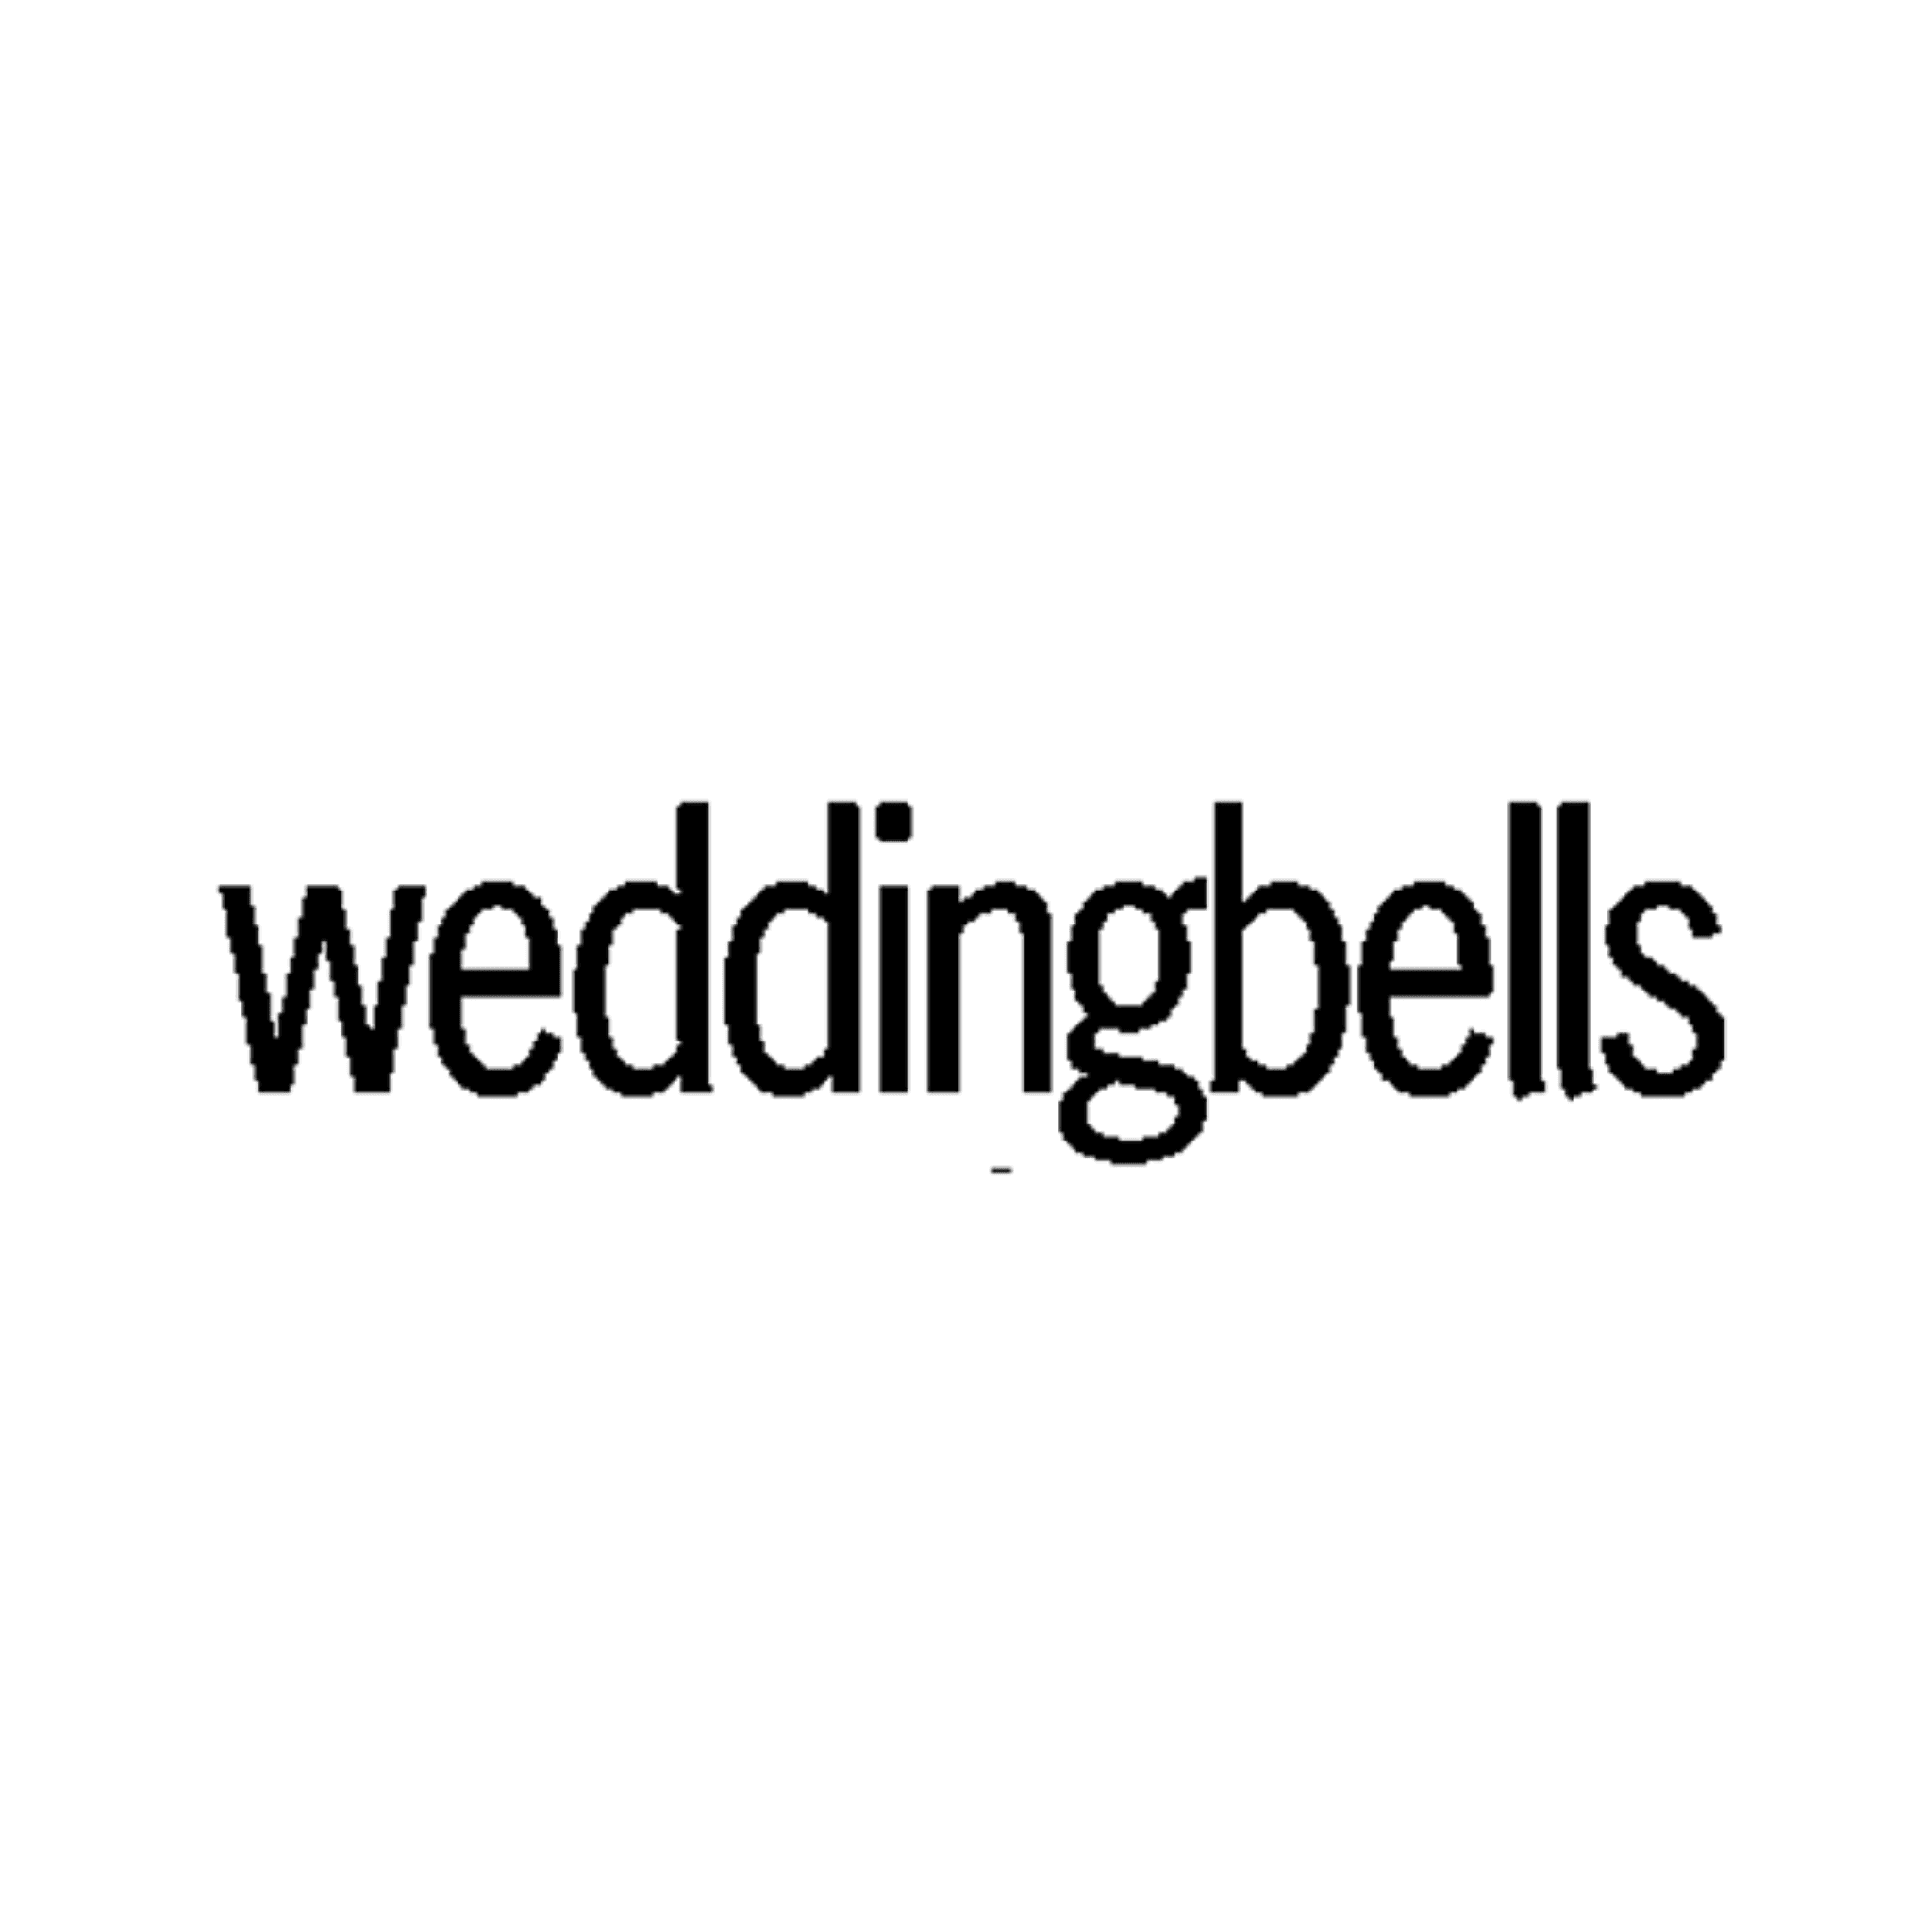 Weddingbells